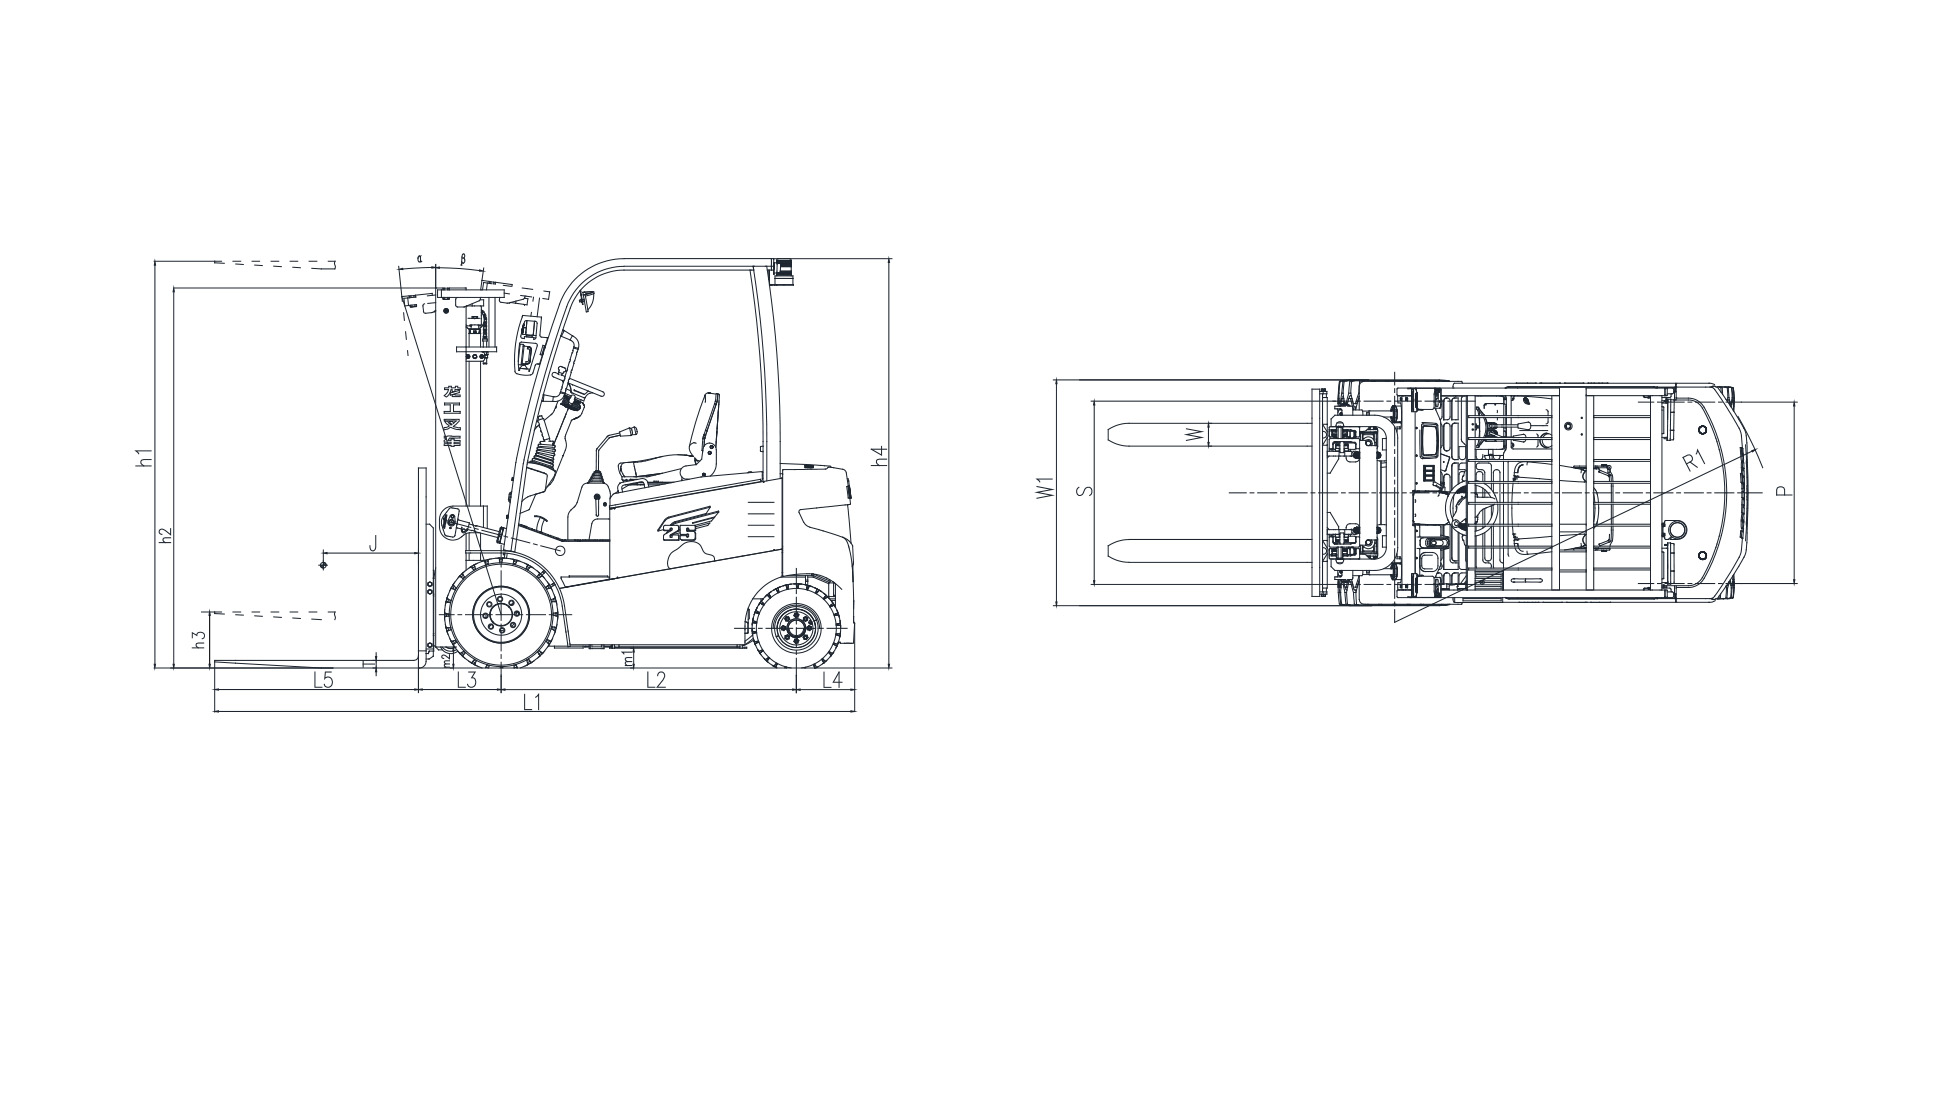 LG40/50B Forklift schema